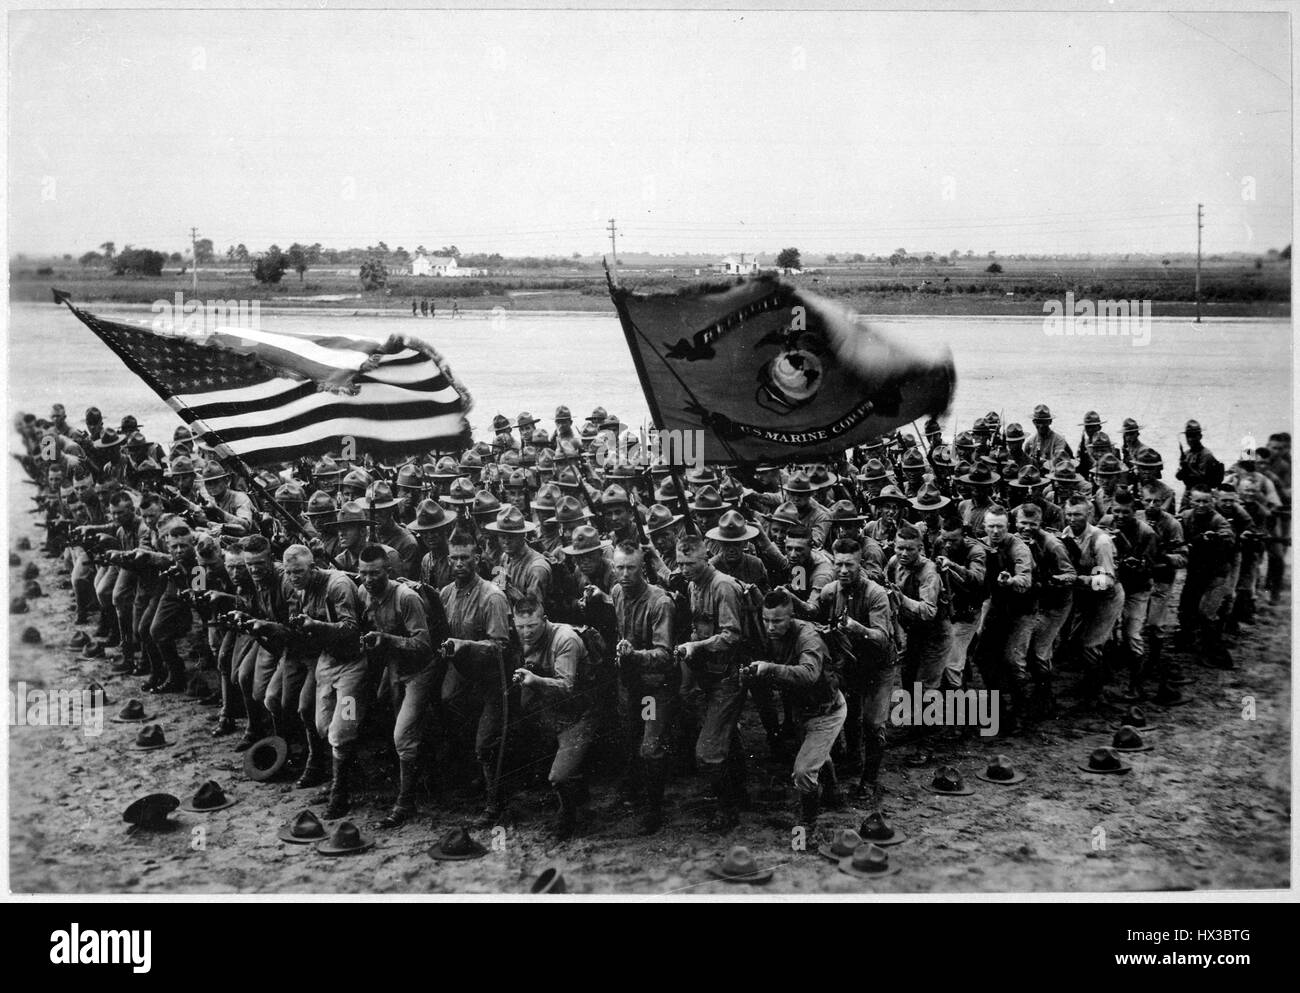 Decenas de infantes de Marina de los Estados Unidos, agrupados por la orilla portando banderas para un anuncio de contratación durante la I Guerra Mundial, 1918. Imagen cortesía de los Archivos Nacionales. Foto de stock